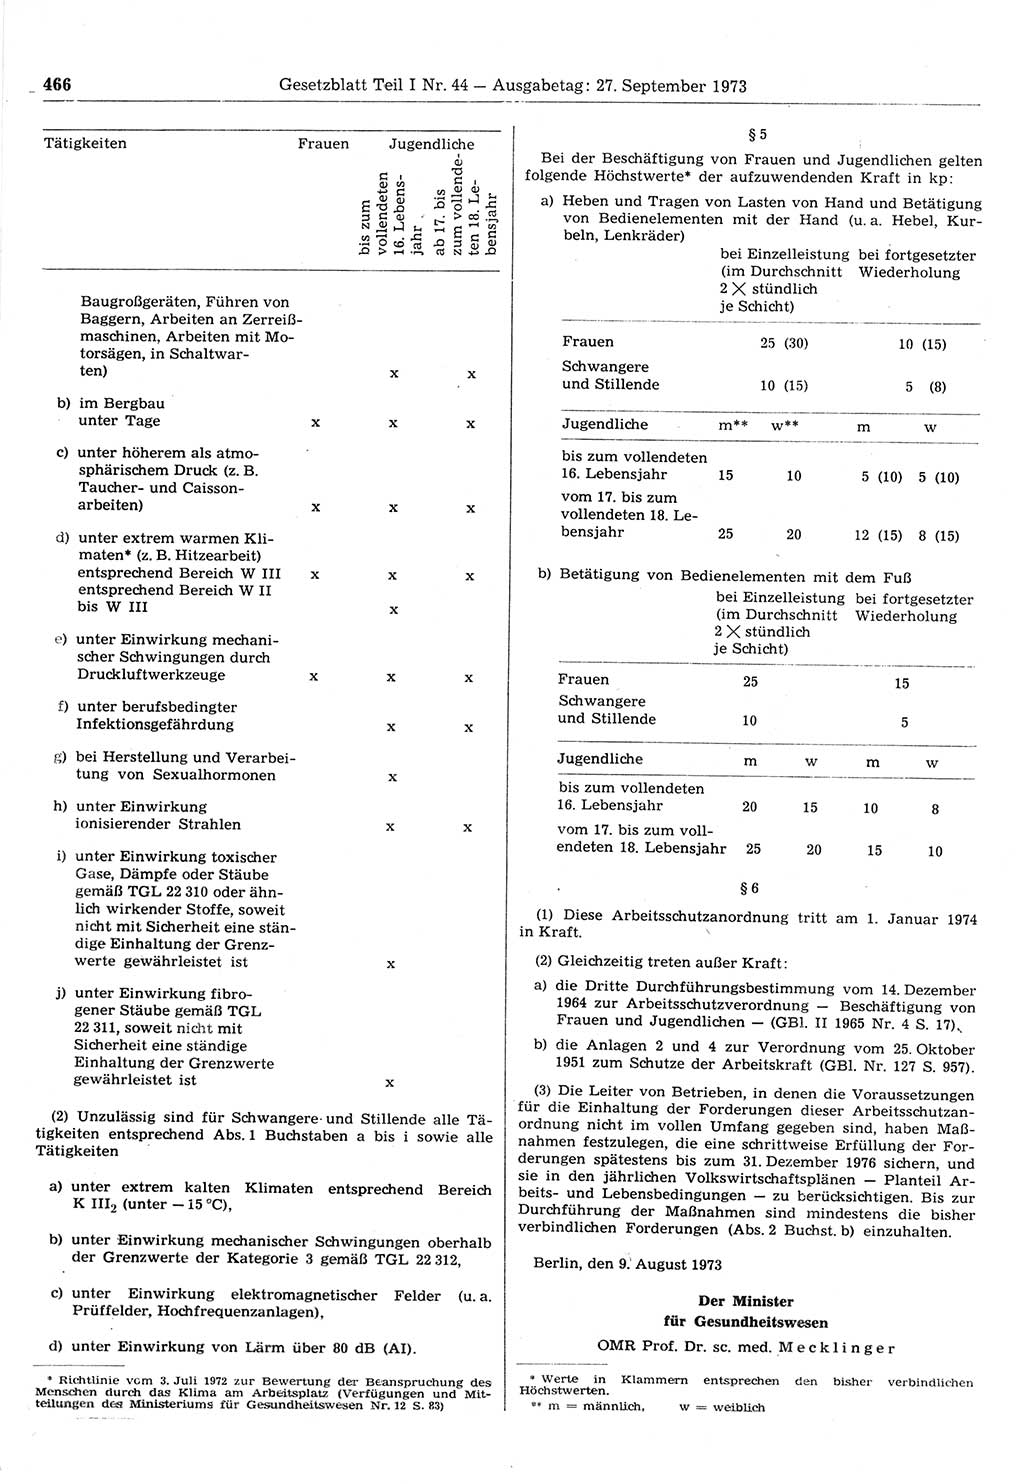 Gesetzblatt (GBl.) der Deutschen Demokratischen Republik (DDR) Teil Ⅰ 1973, Seite 466 (GBl. DDR Ⅰ 1973, S. 466)